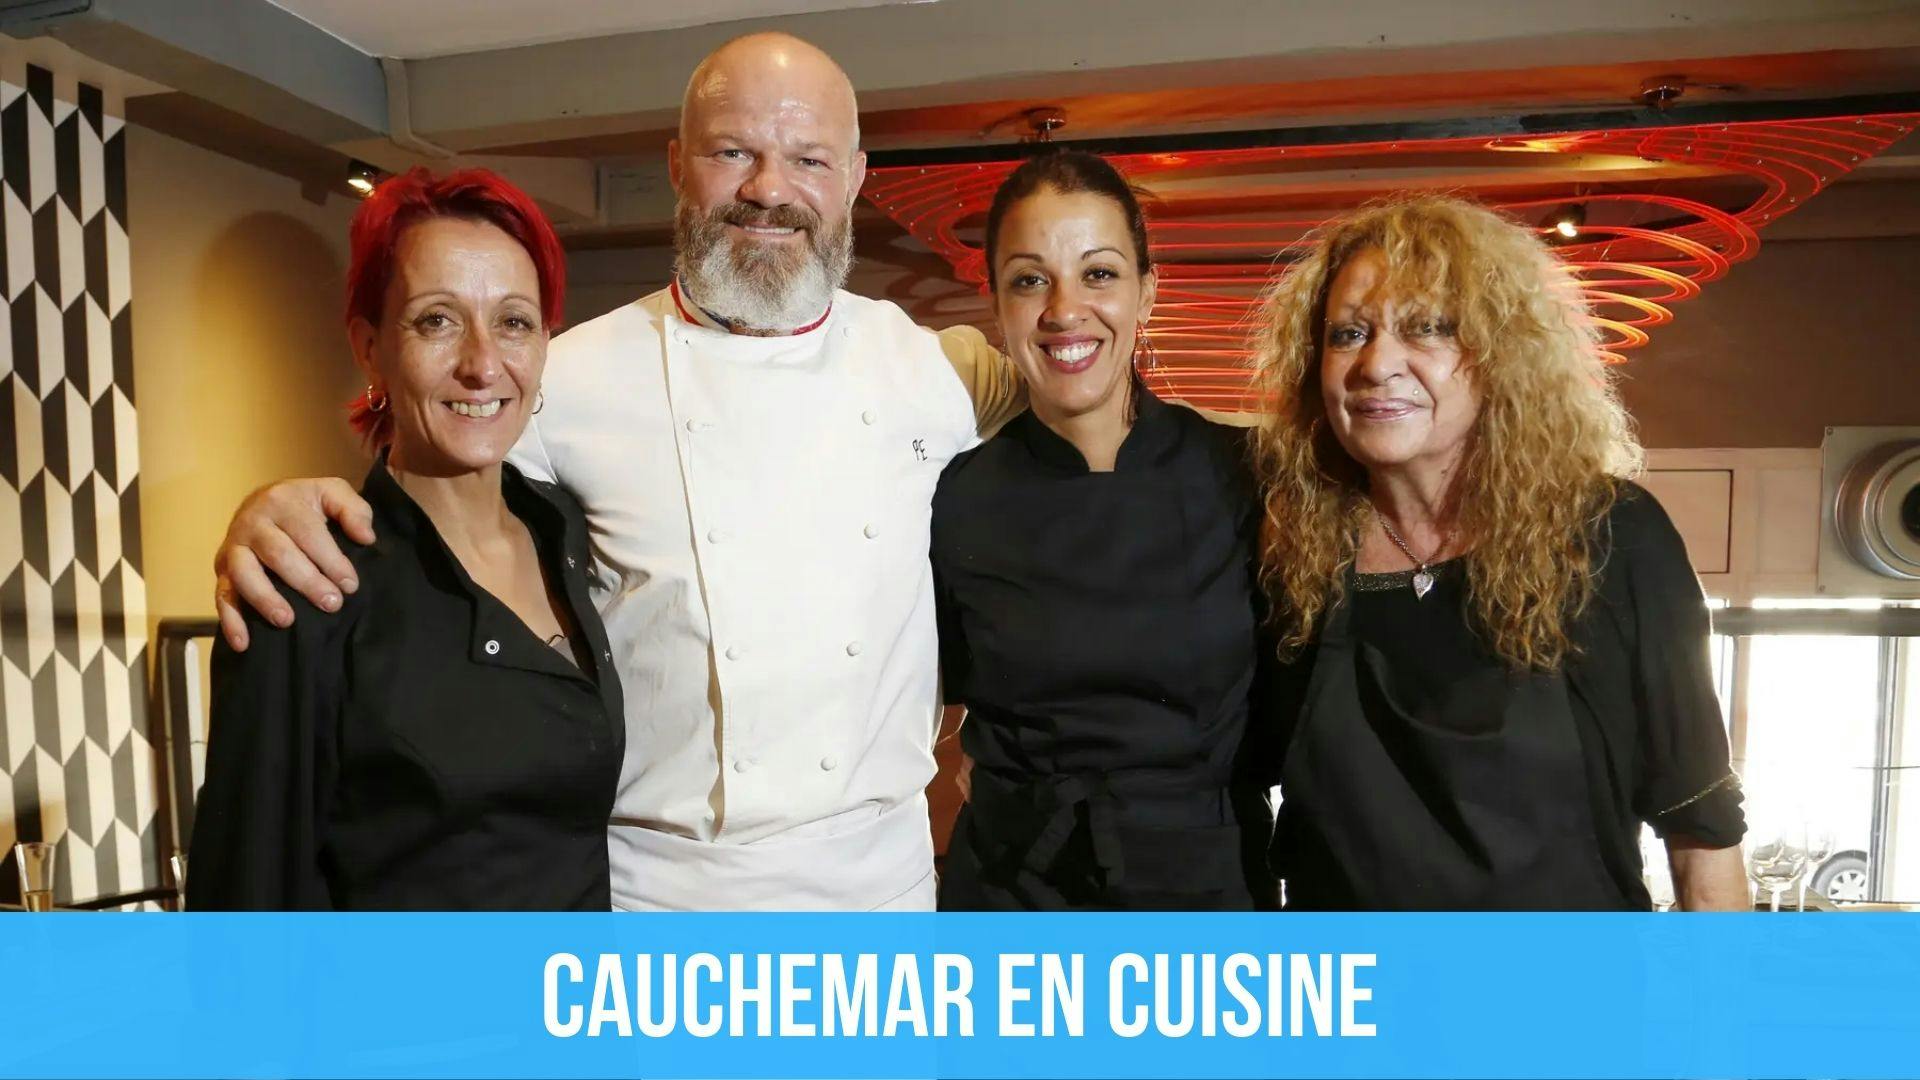 photo du chef Philippe Etchebest avec des participants de l’émission de téléréalité Cauchemar en cuisine